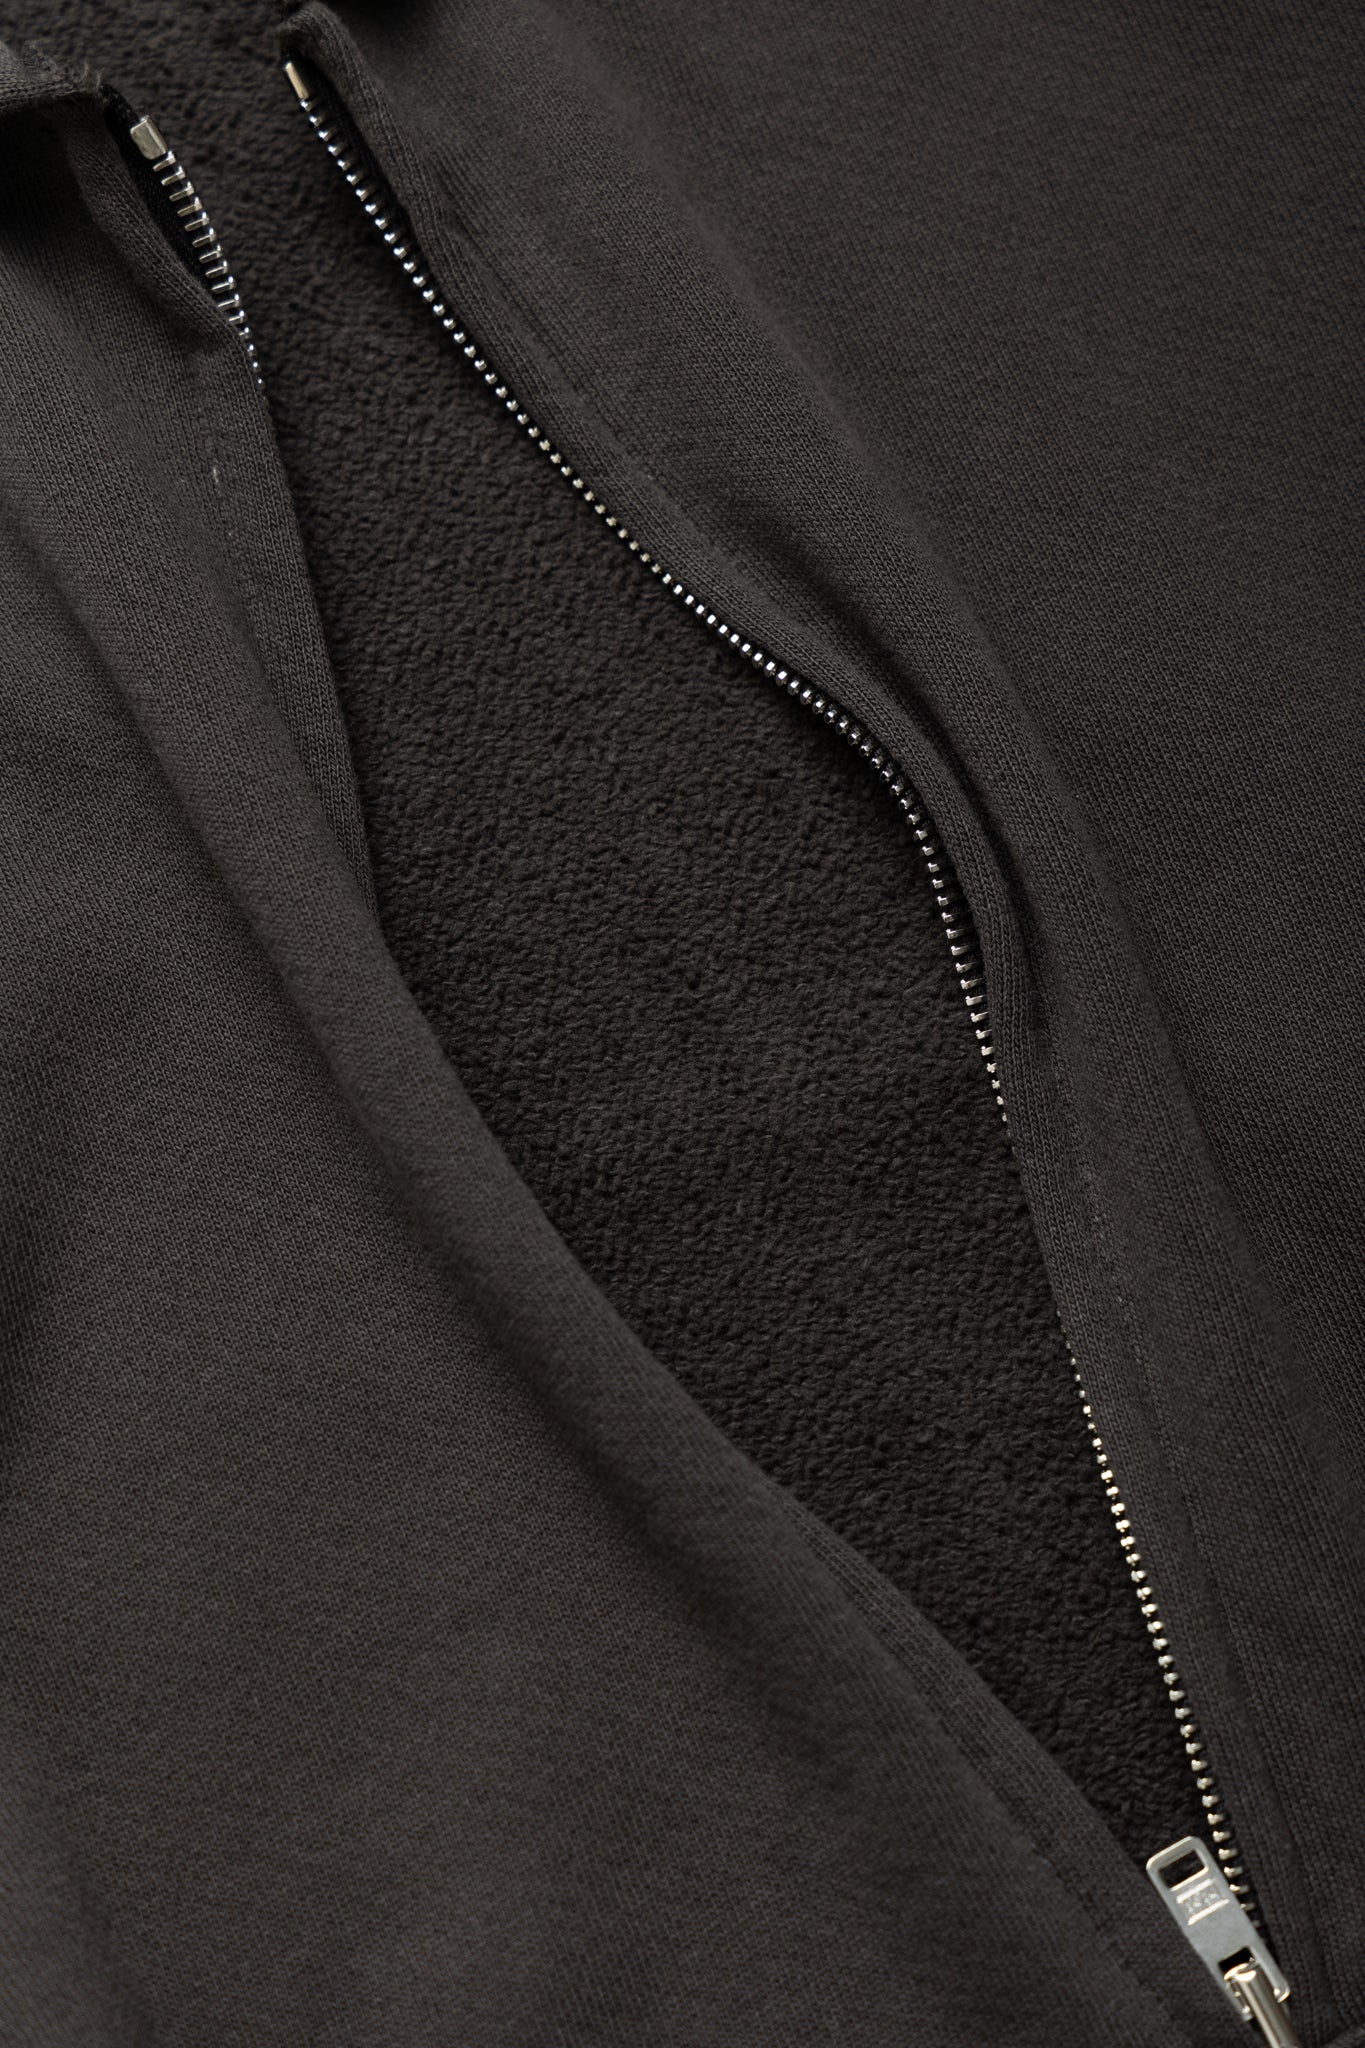 Cropped Zip Hoodie - Vintage Black